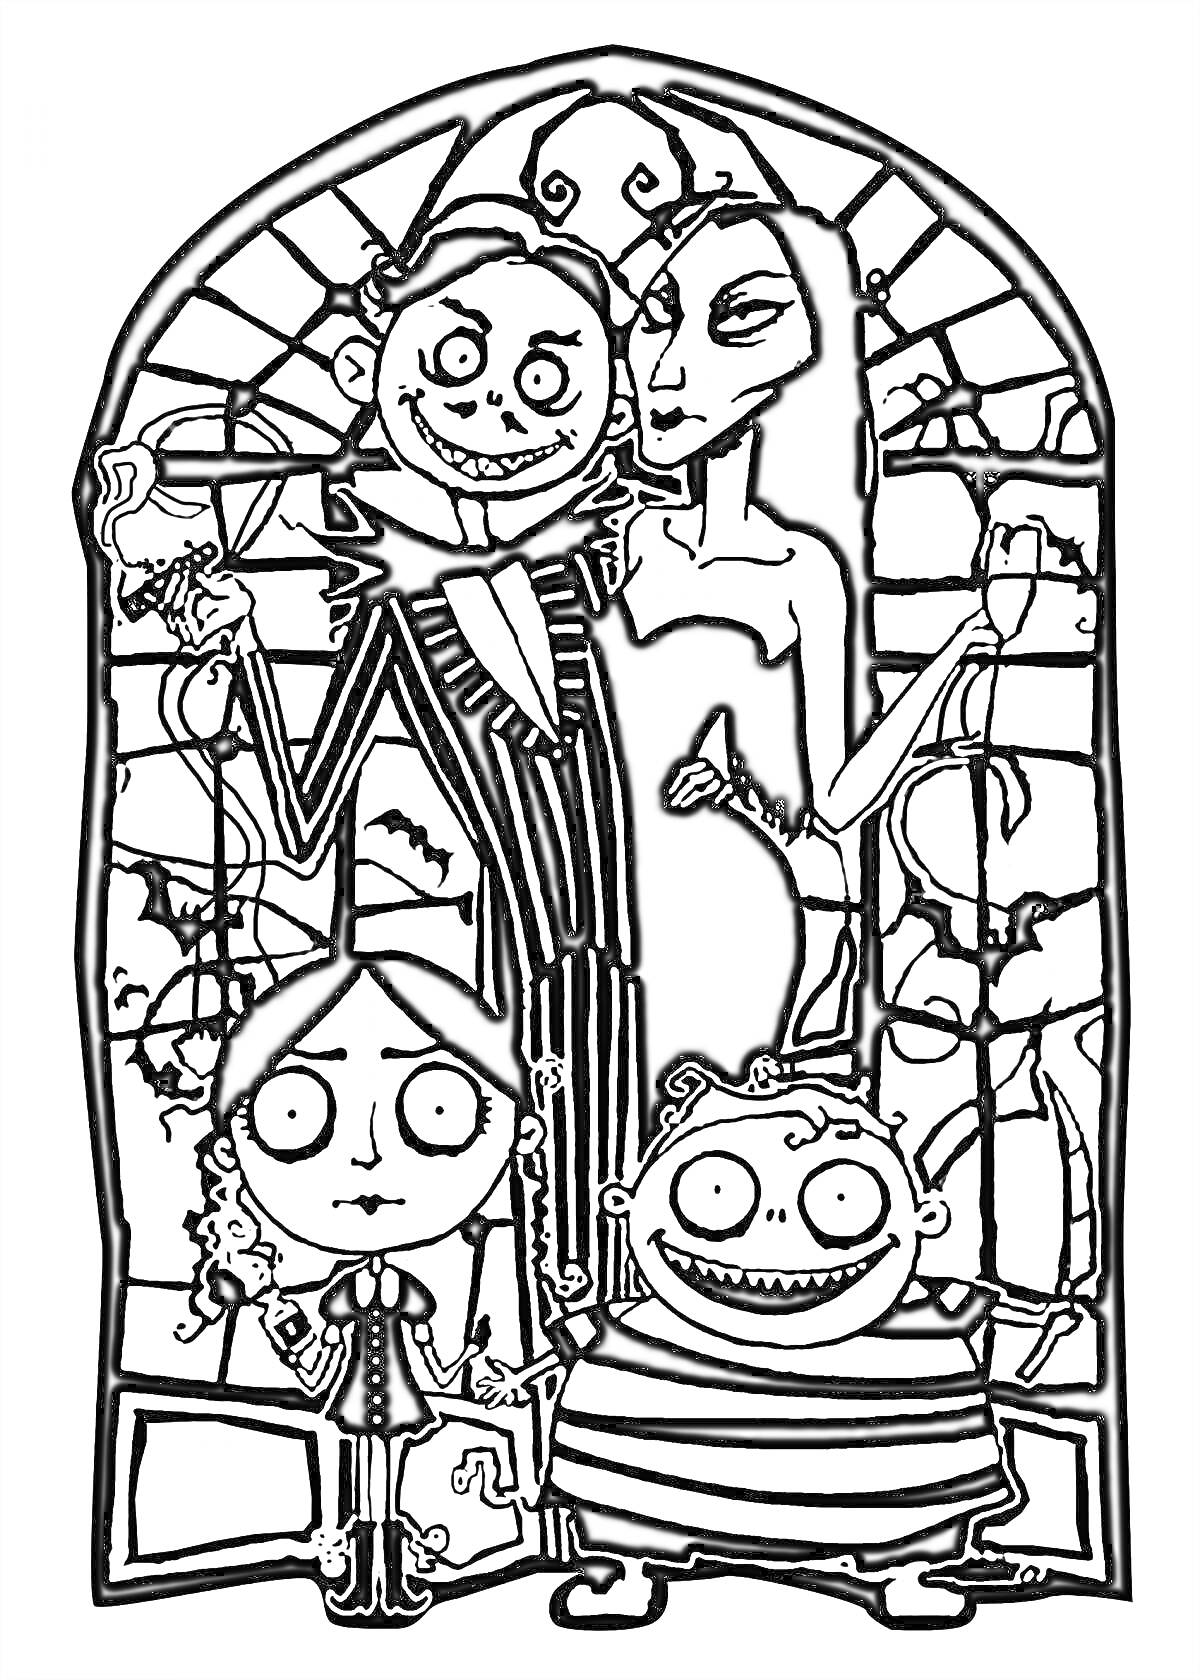 Четыре персонажа семейки Аддамс перед витражным окном - мужчина с бокалом и женщиной с длинными волосами, девочка с косичками и мальчик в полосатой рубашке.